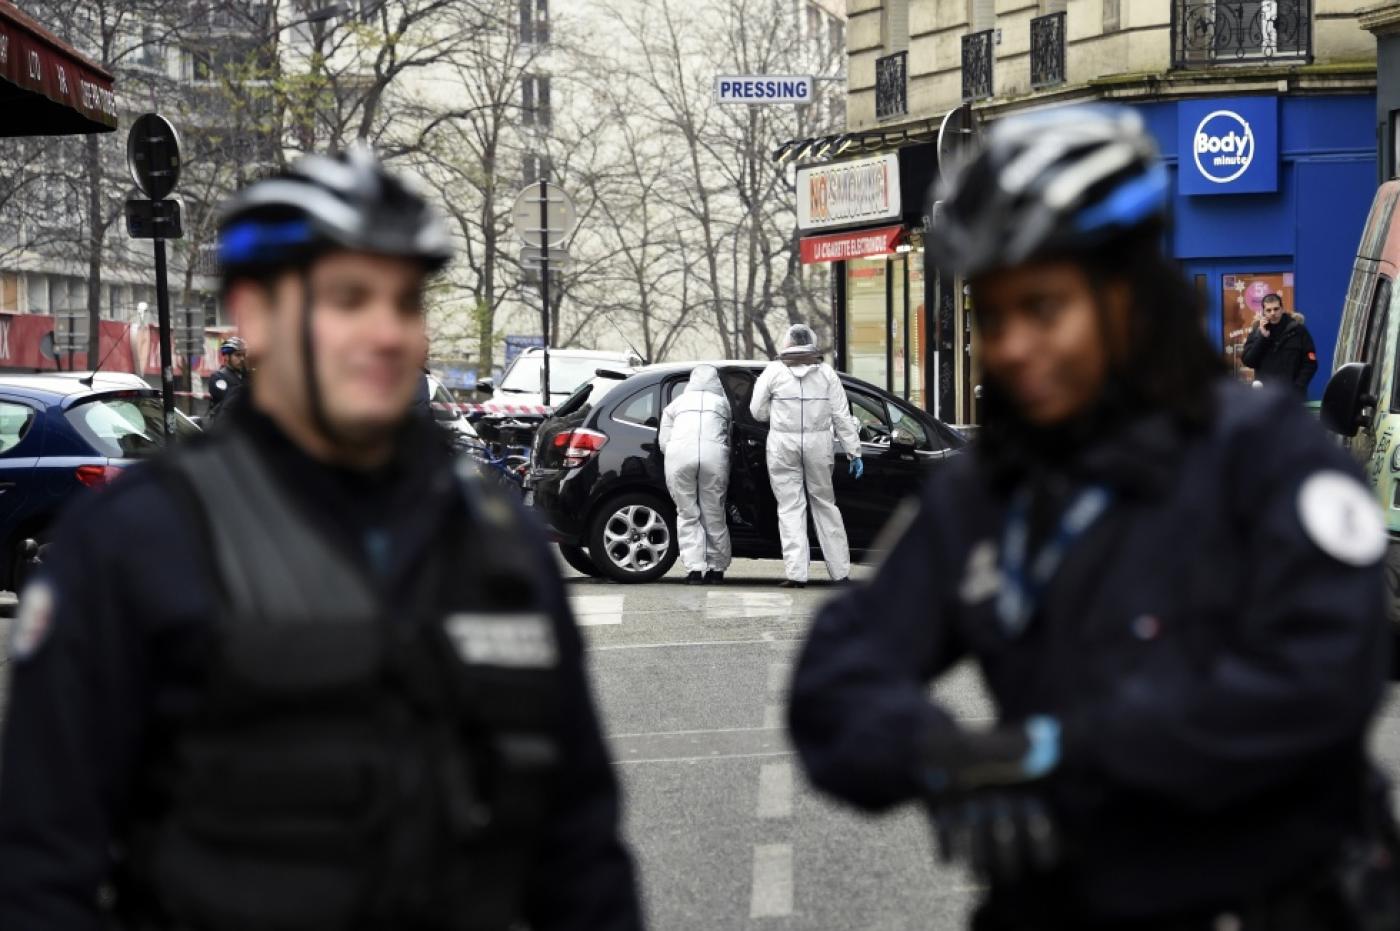 Des officiers de police et des experts en médecine légale examinent la voiture utilisée par des hommes armés qui ont pris d’assaut les locaux parisiens du journal satirique Charlie Hebdo, tuant douze personnes, le 7 janvier 2015 (AFP)